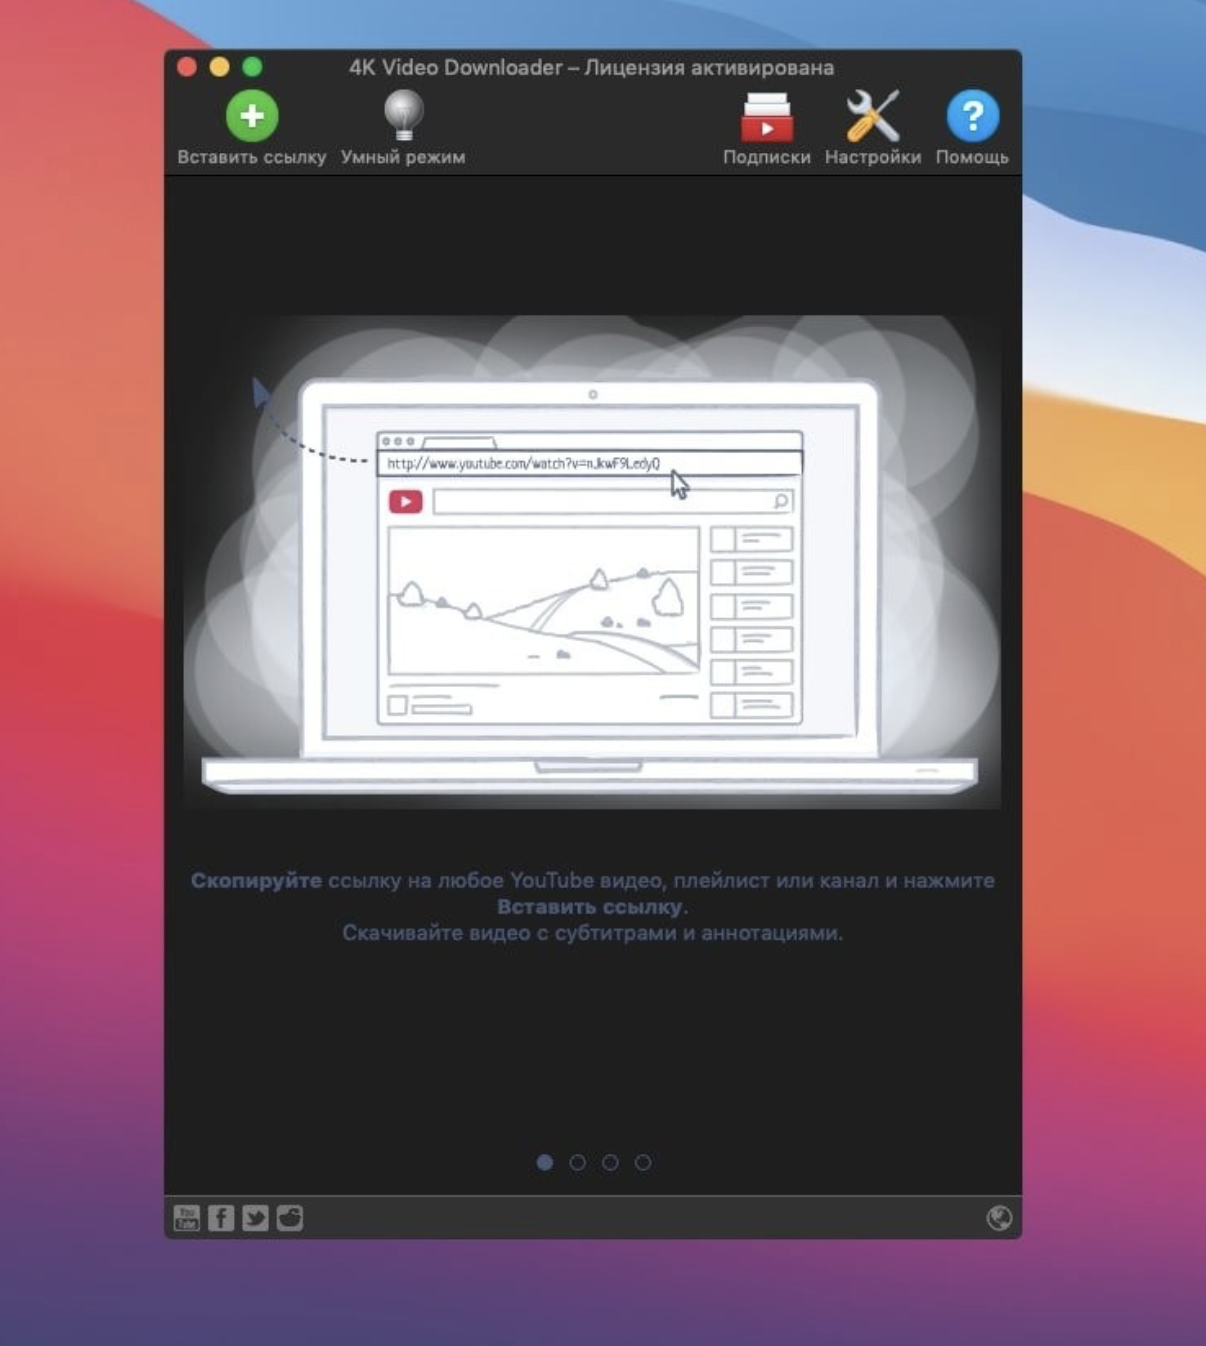 4K Video Downloader Plus Pro for Mac v4.30.0 4K视频下载器 激活版-1